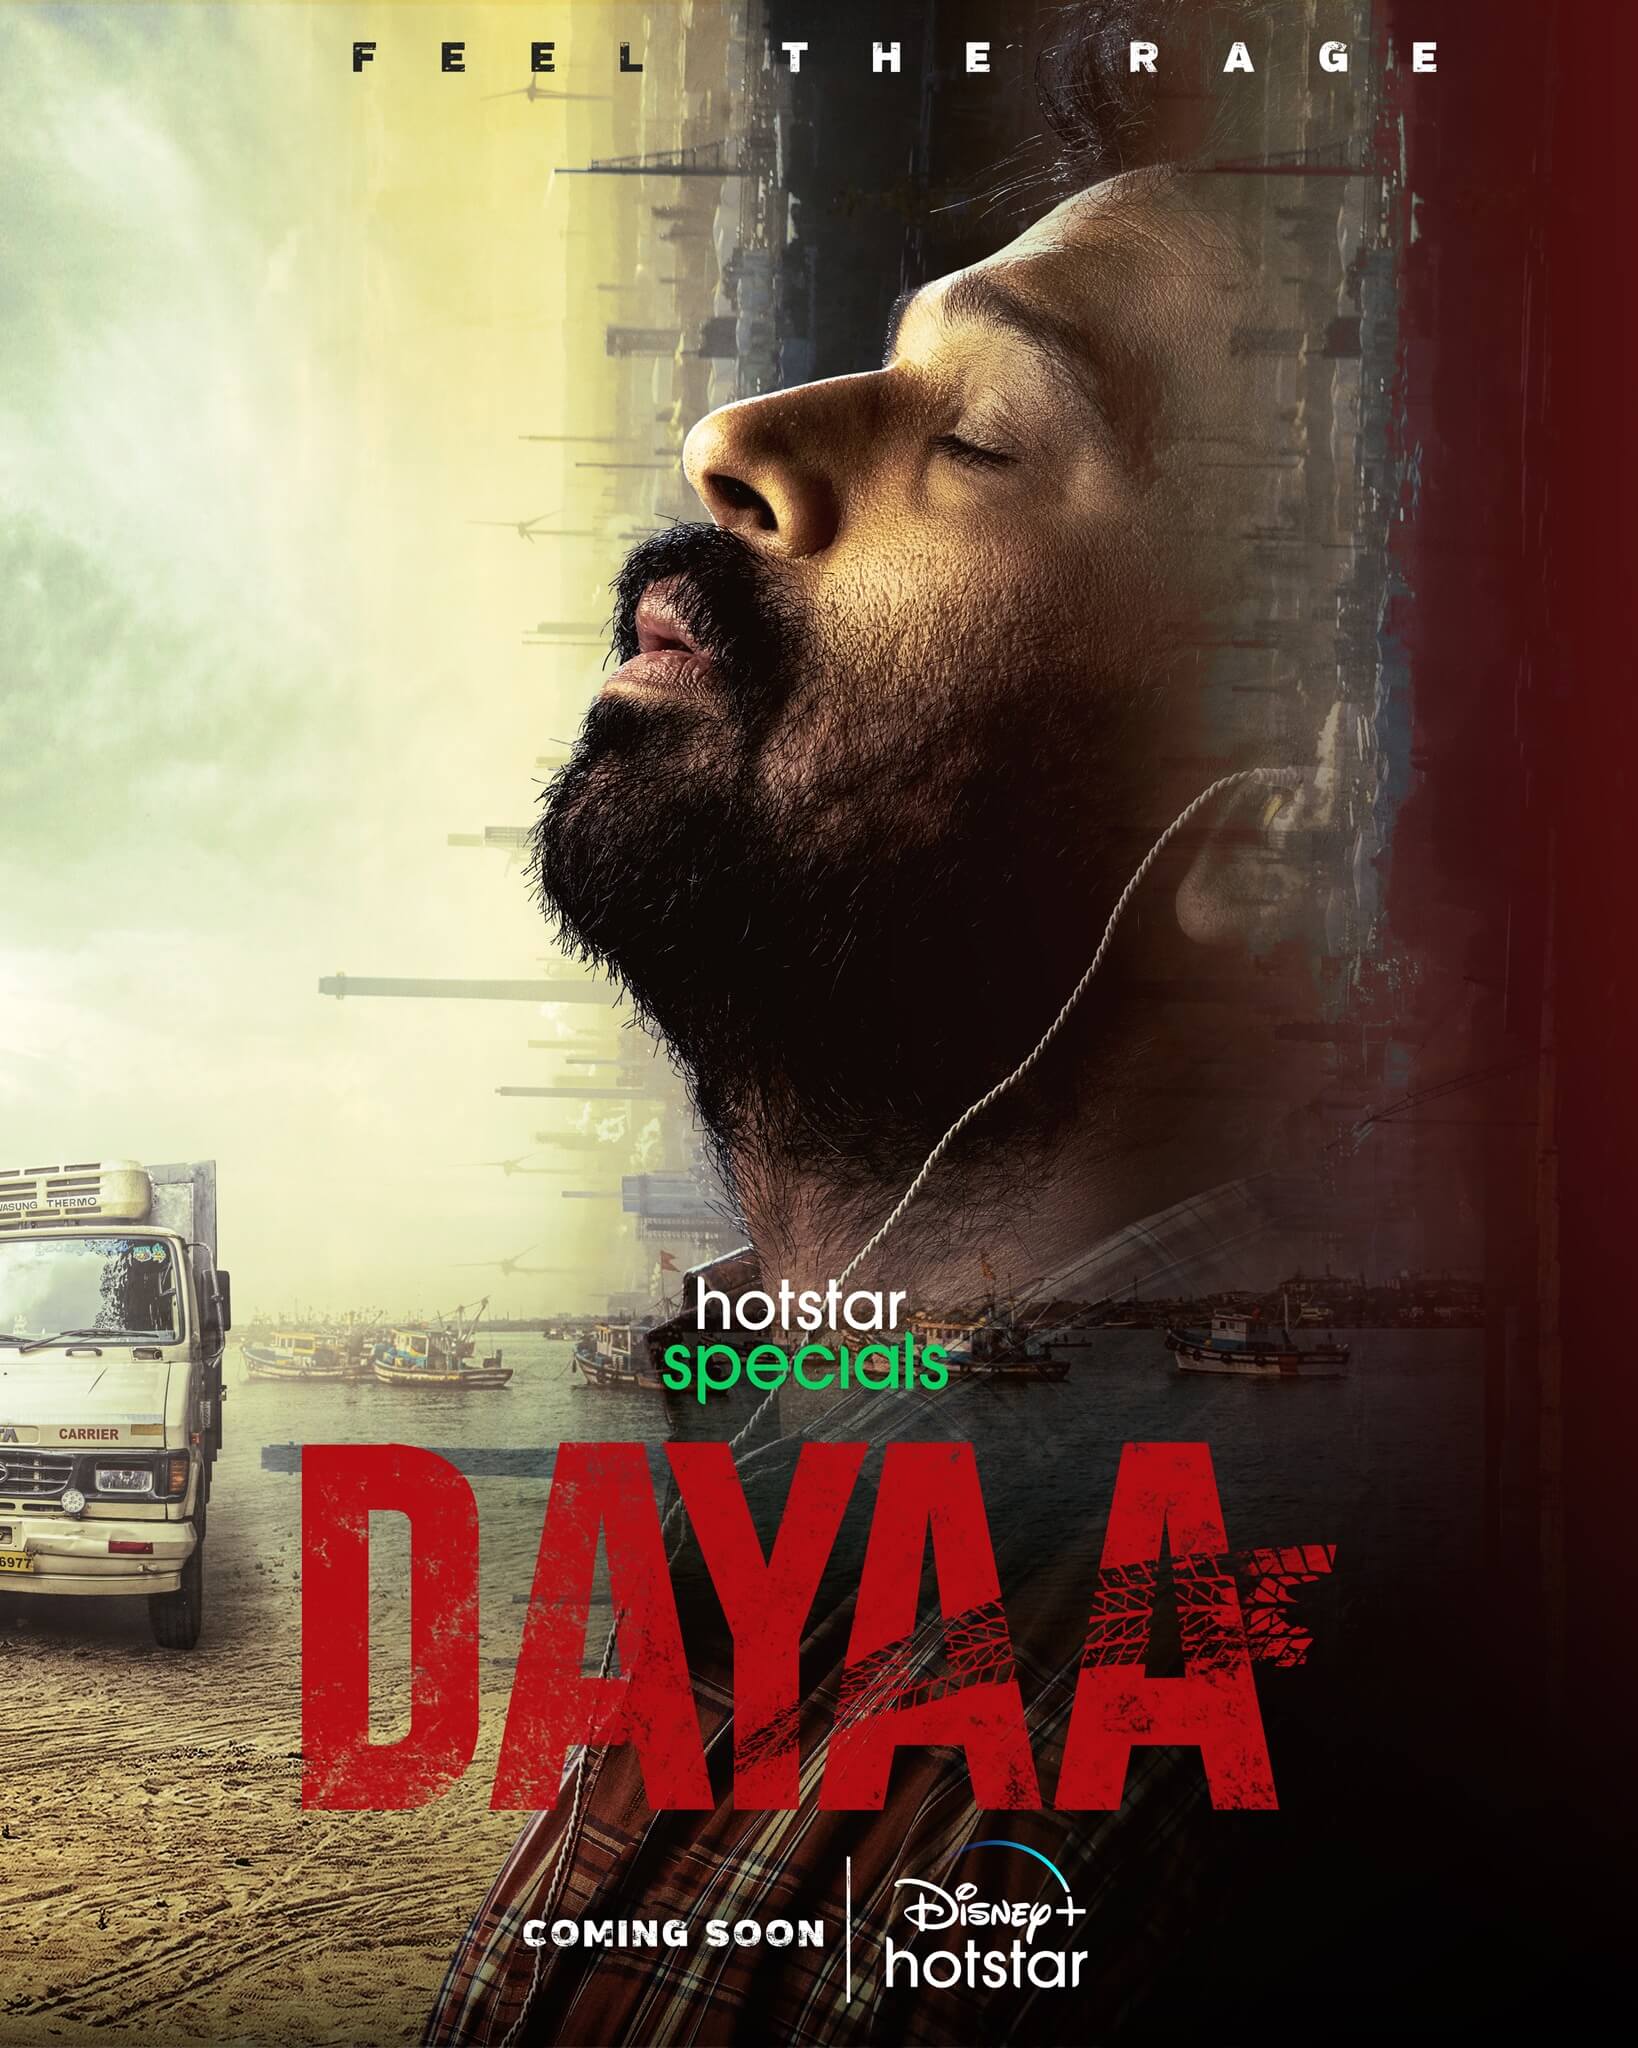 Dayaa Series poster